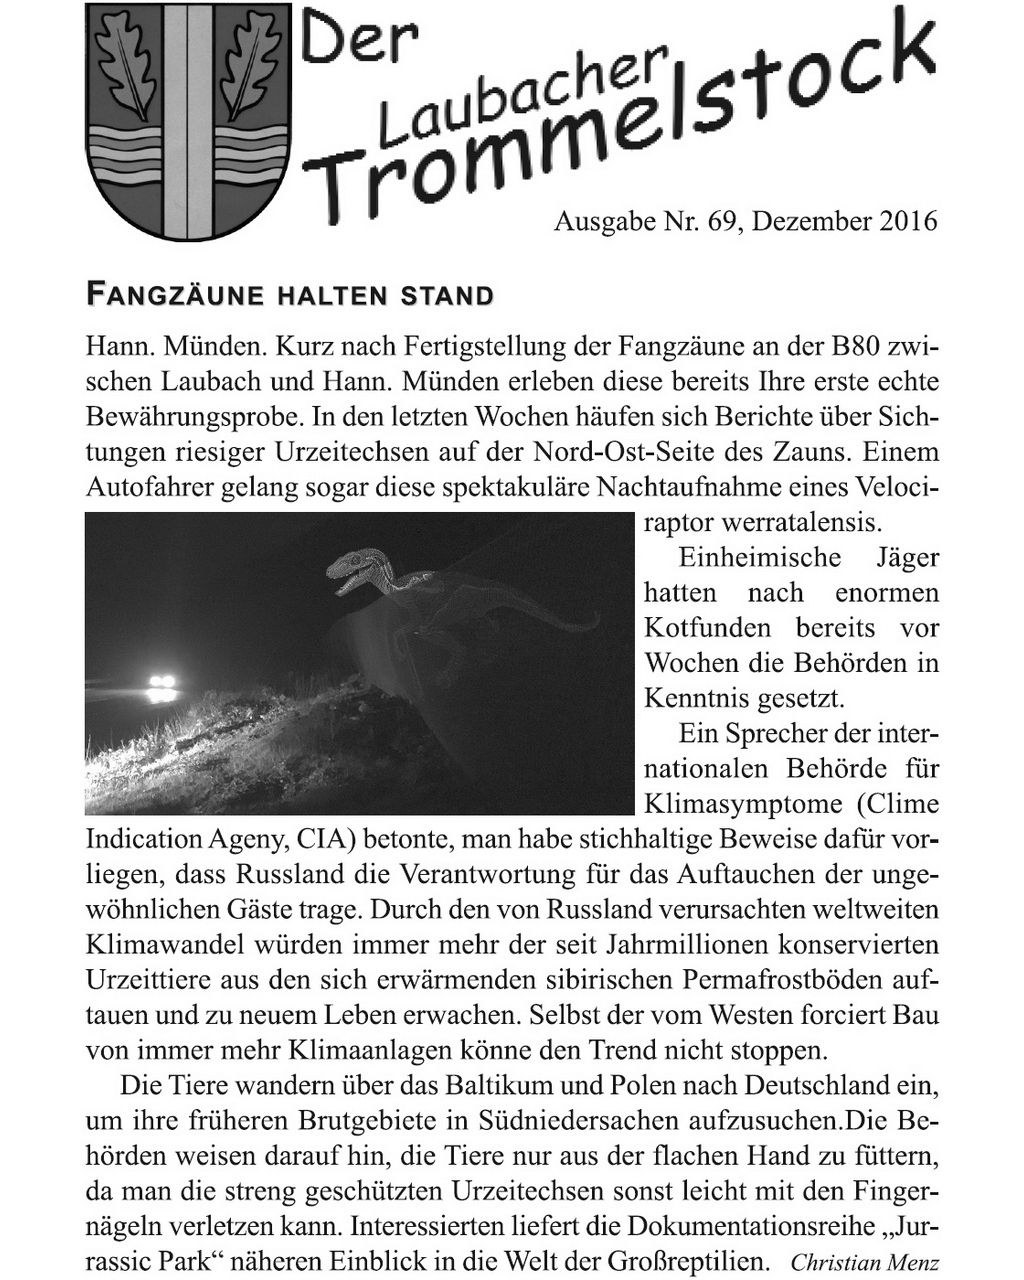 Laubacher-Trommelstock-Titelseite-069